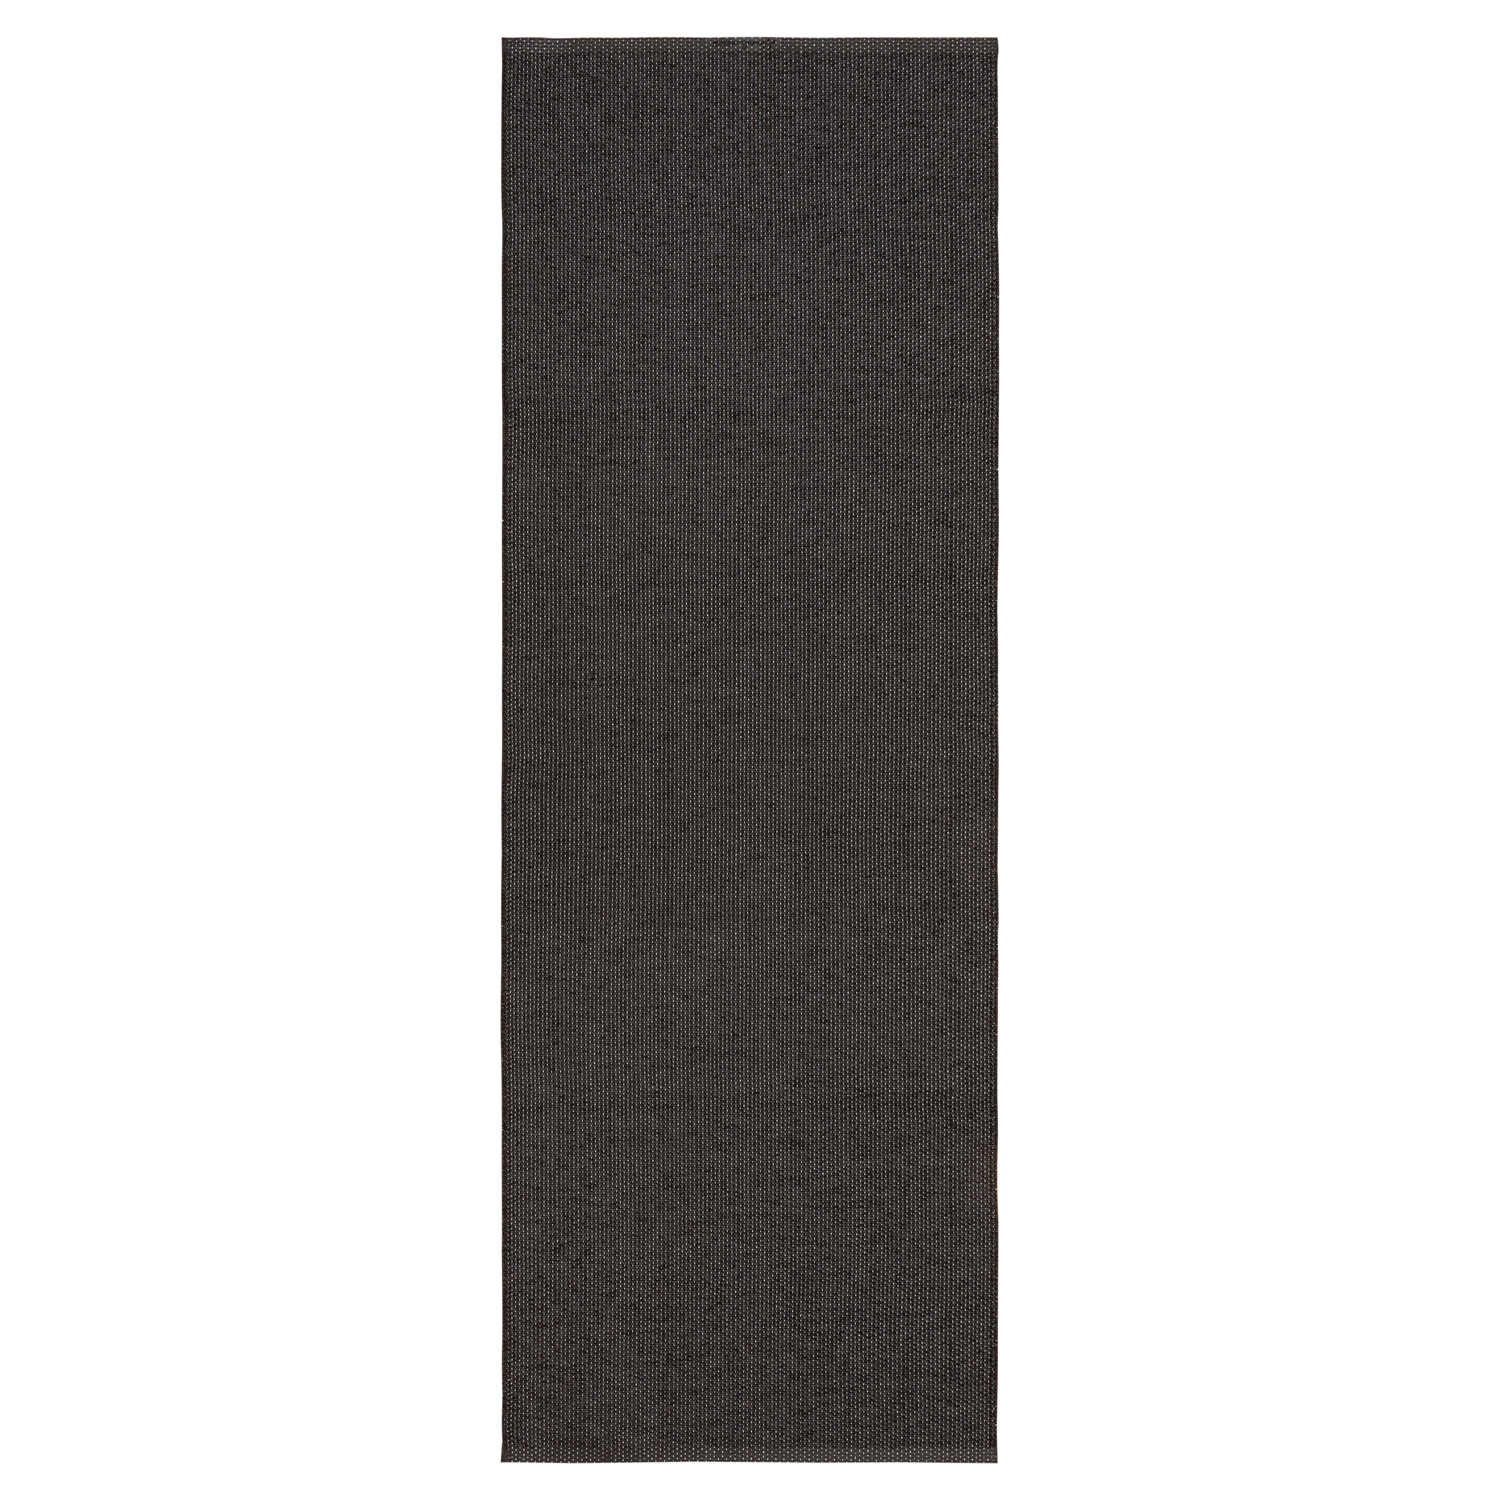 Horredsmattan Teppich Solo Black für Innen und Aussen Made in Sweden since 1956 UV-Beständig